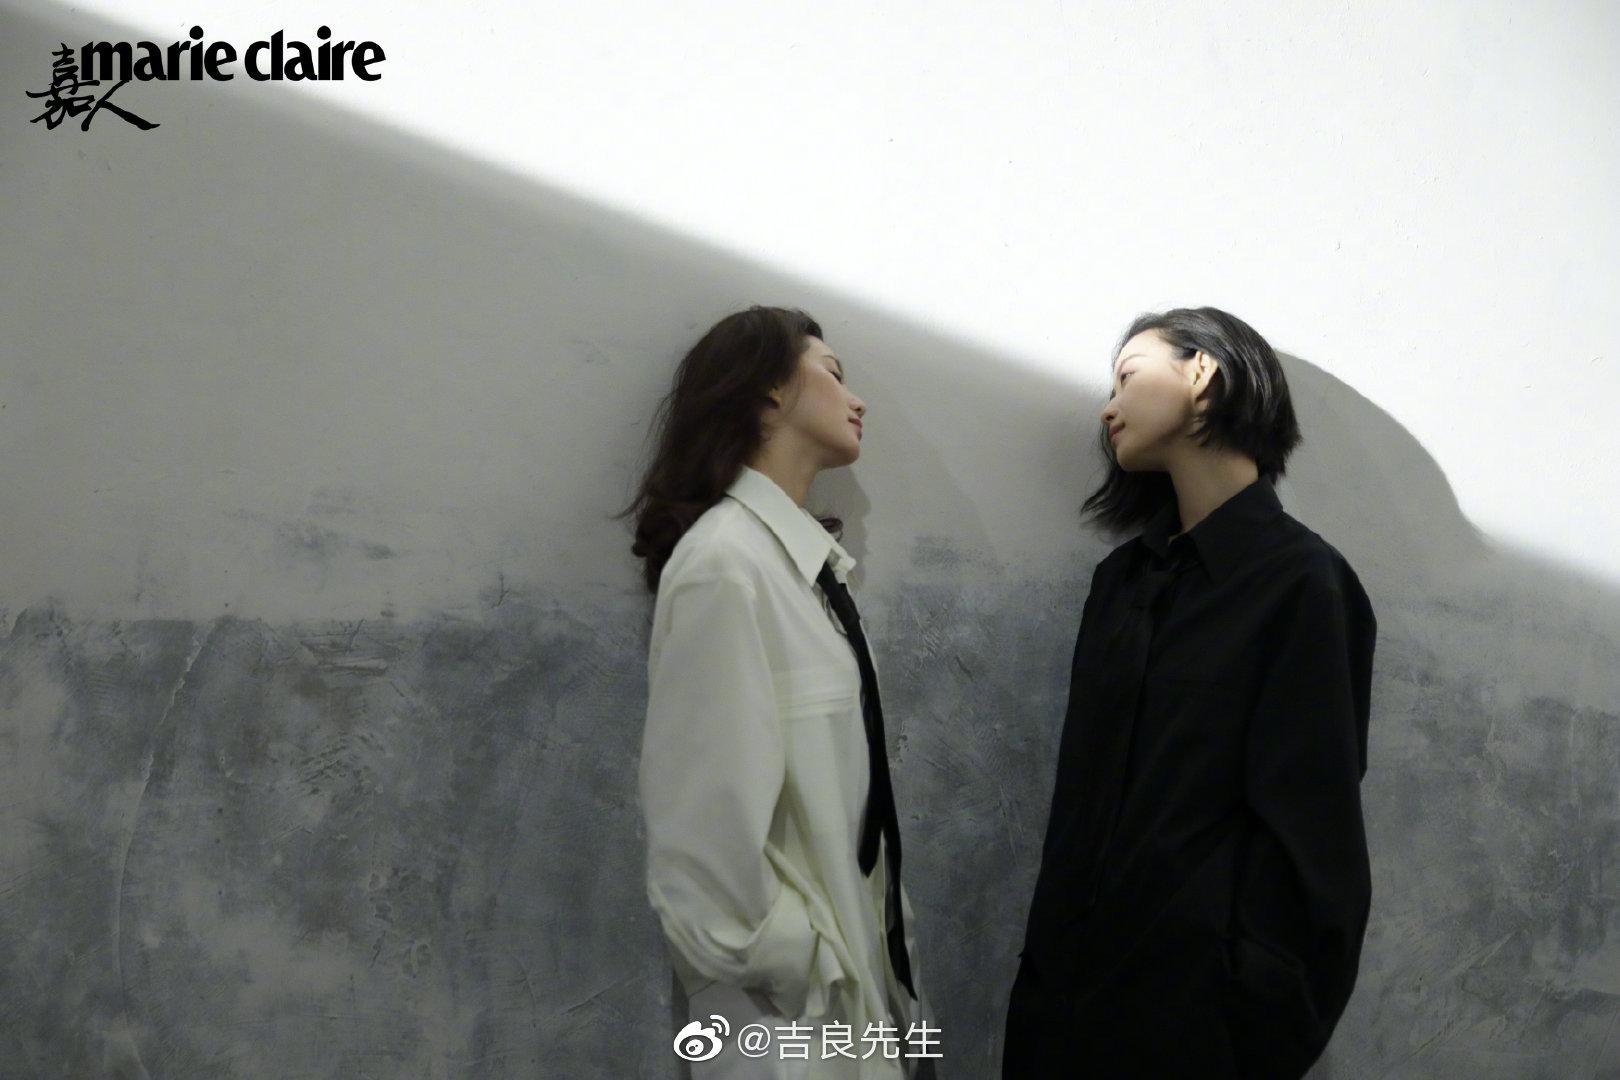 刘诗诗和倪妮携手登上《marie claire 嘉人》2月刊封面